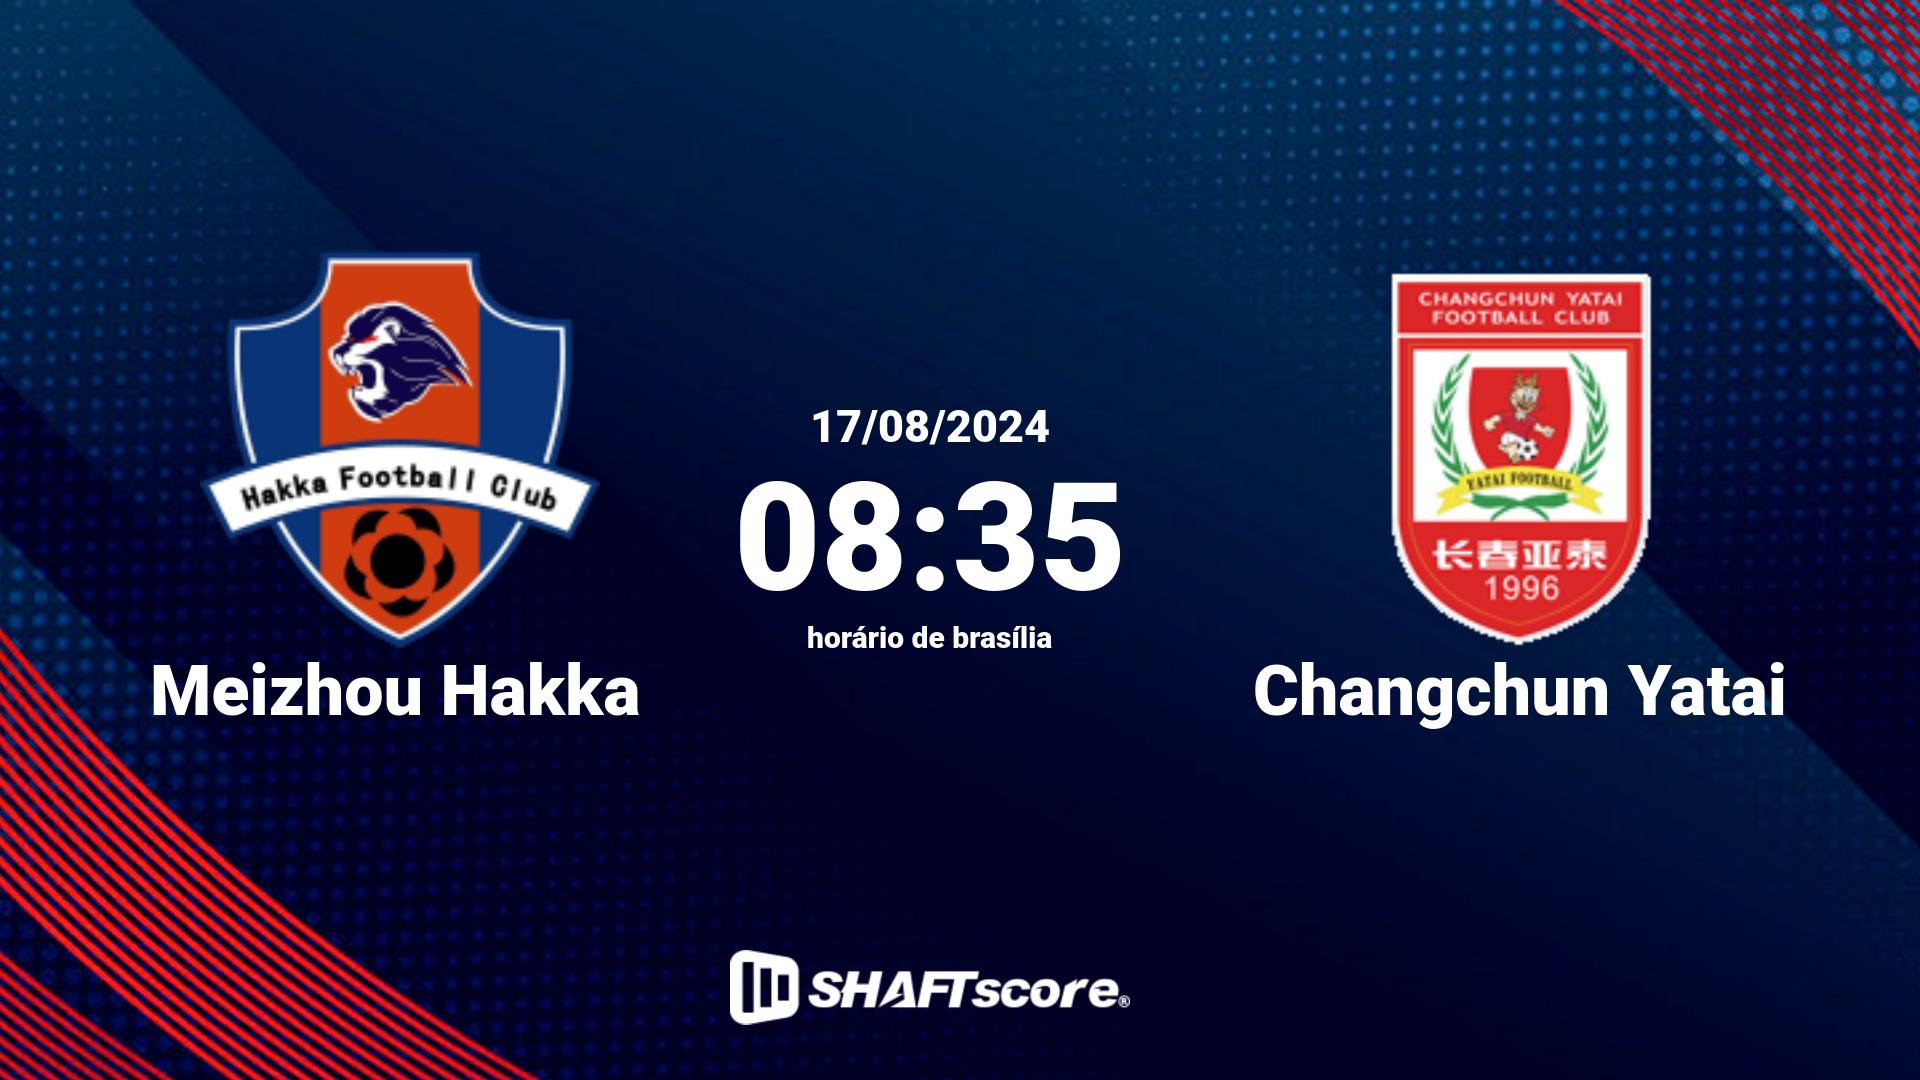 Estatísticas do jogo Meizhou Hakka vs Changchun Yatai 17.08 08:35